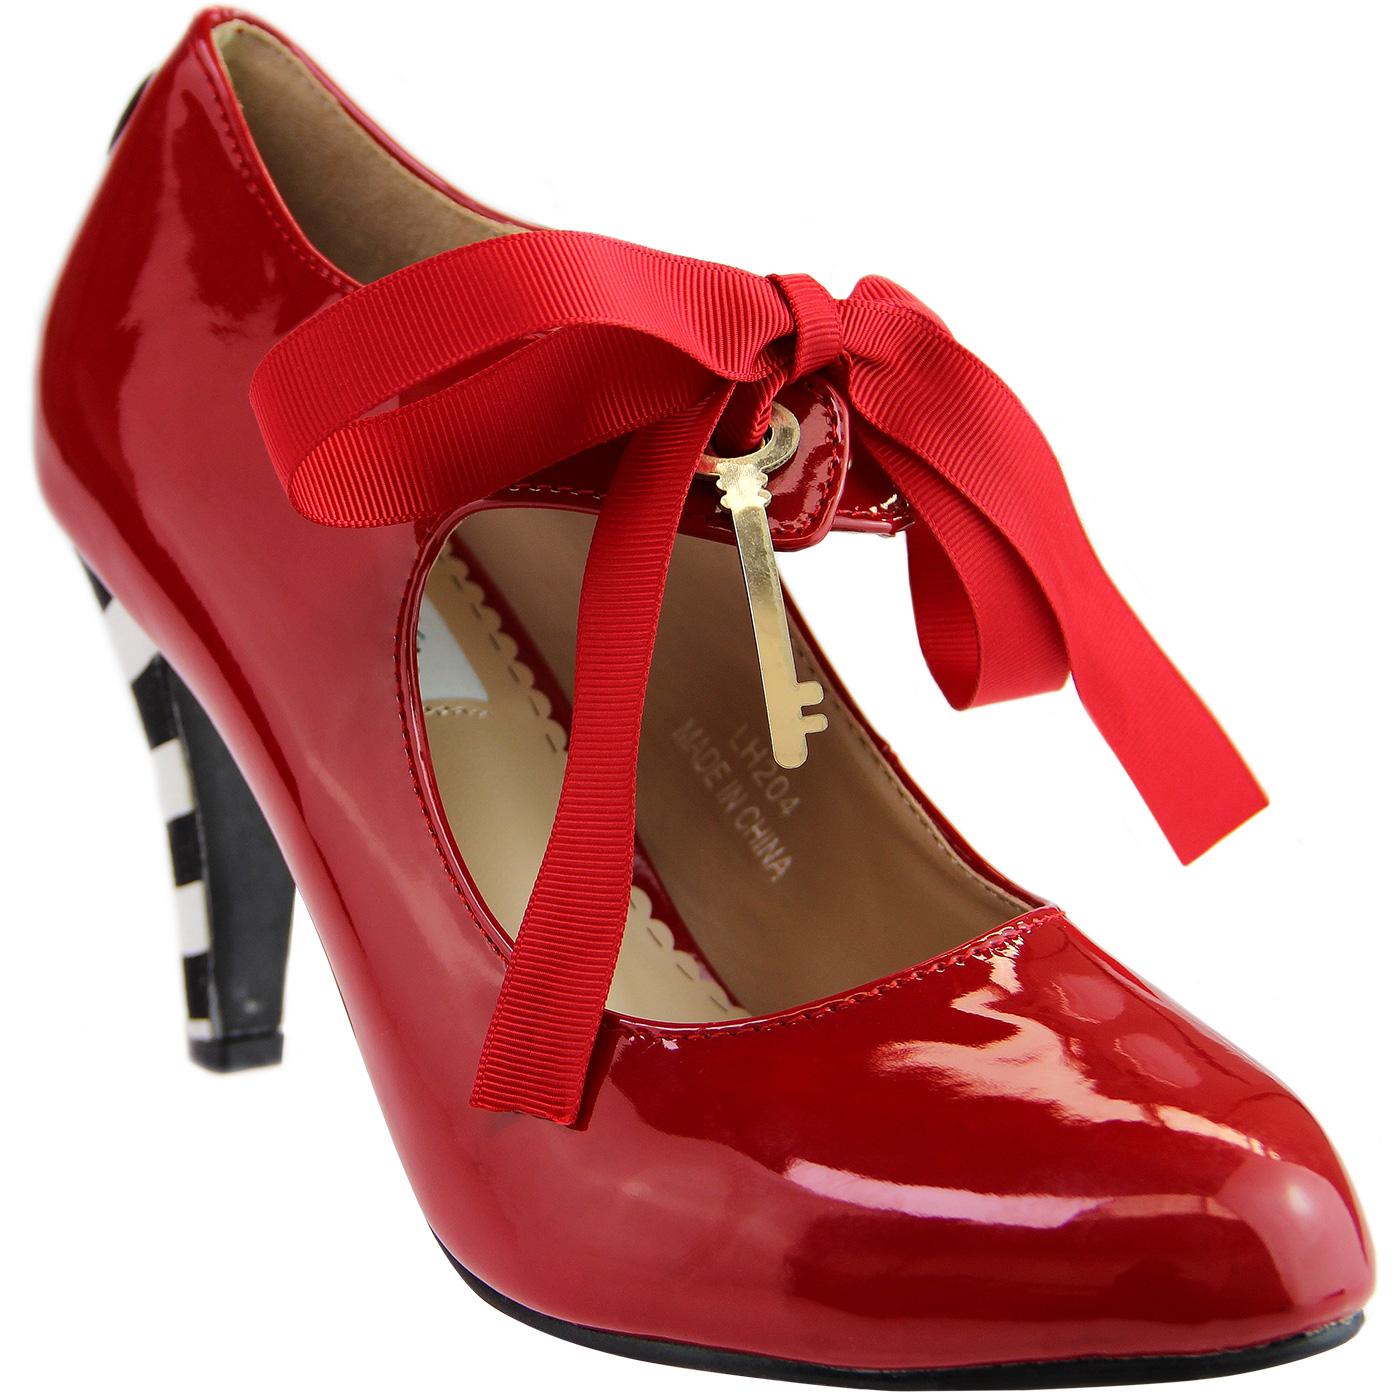 Alice LULU HUN Vintage PU High Heels in Bright Red